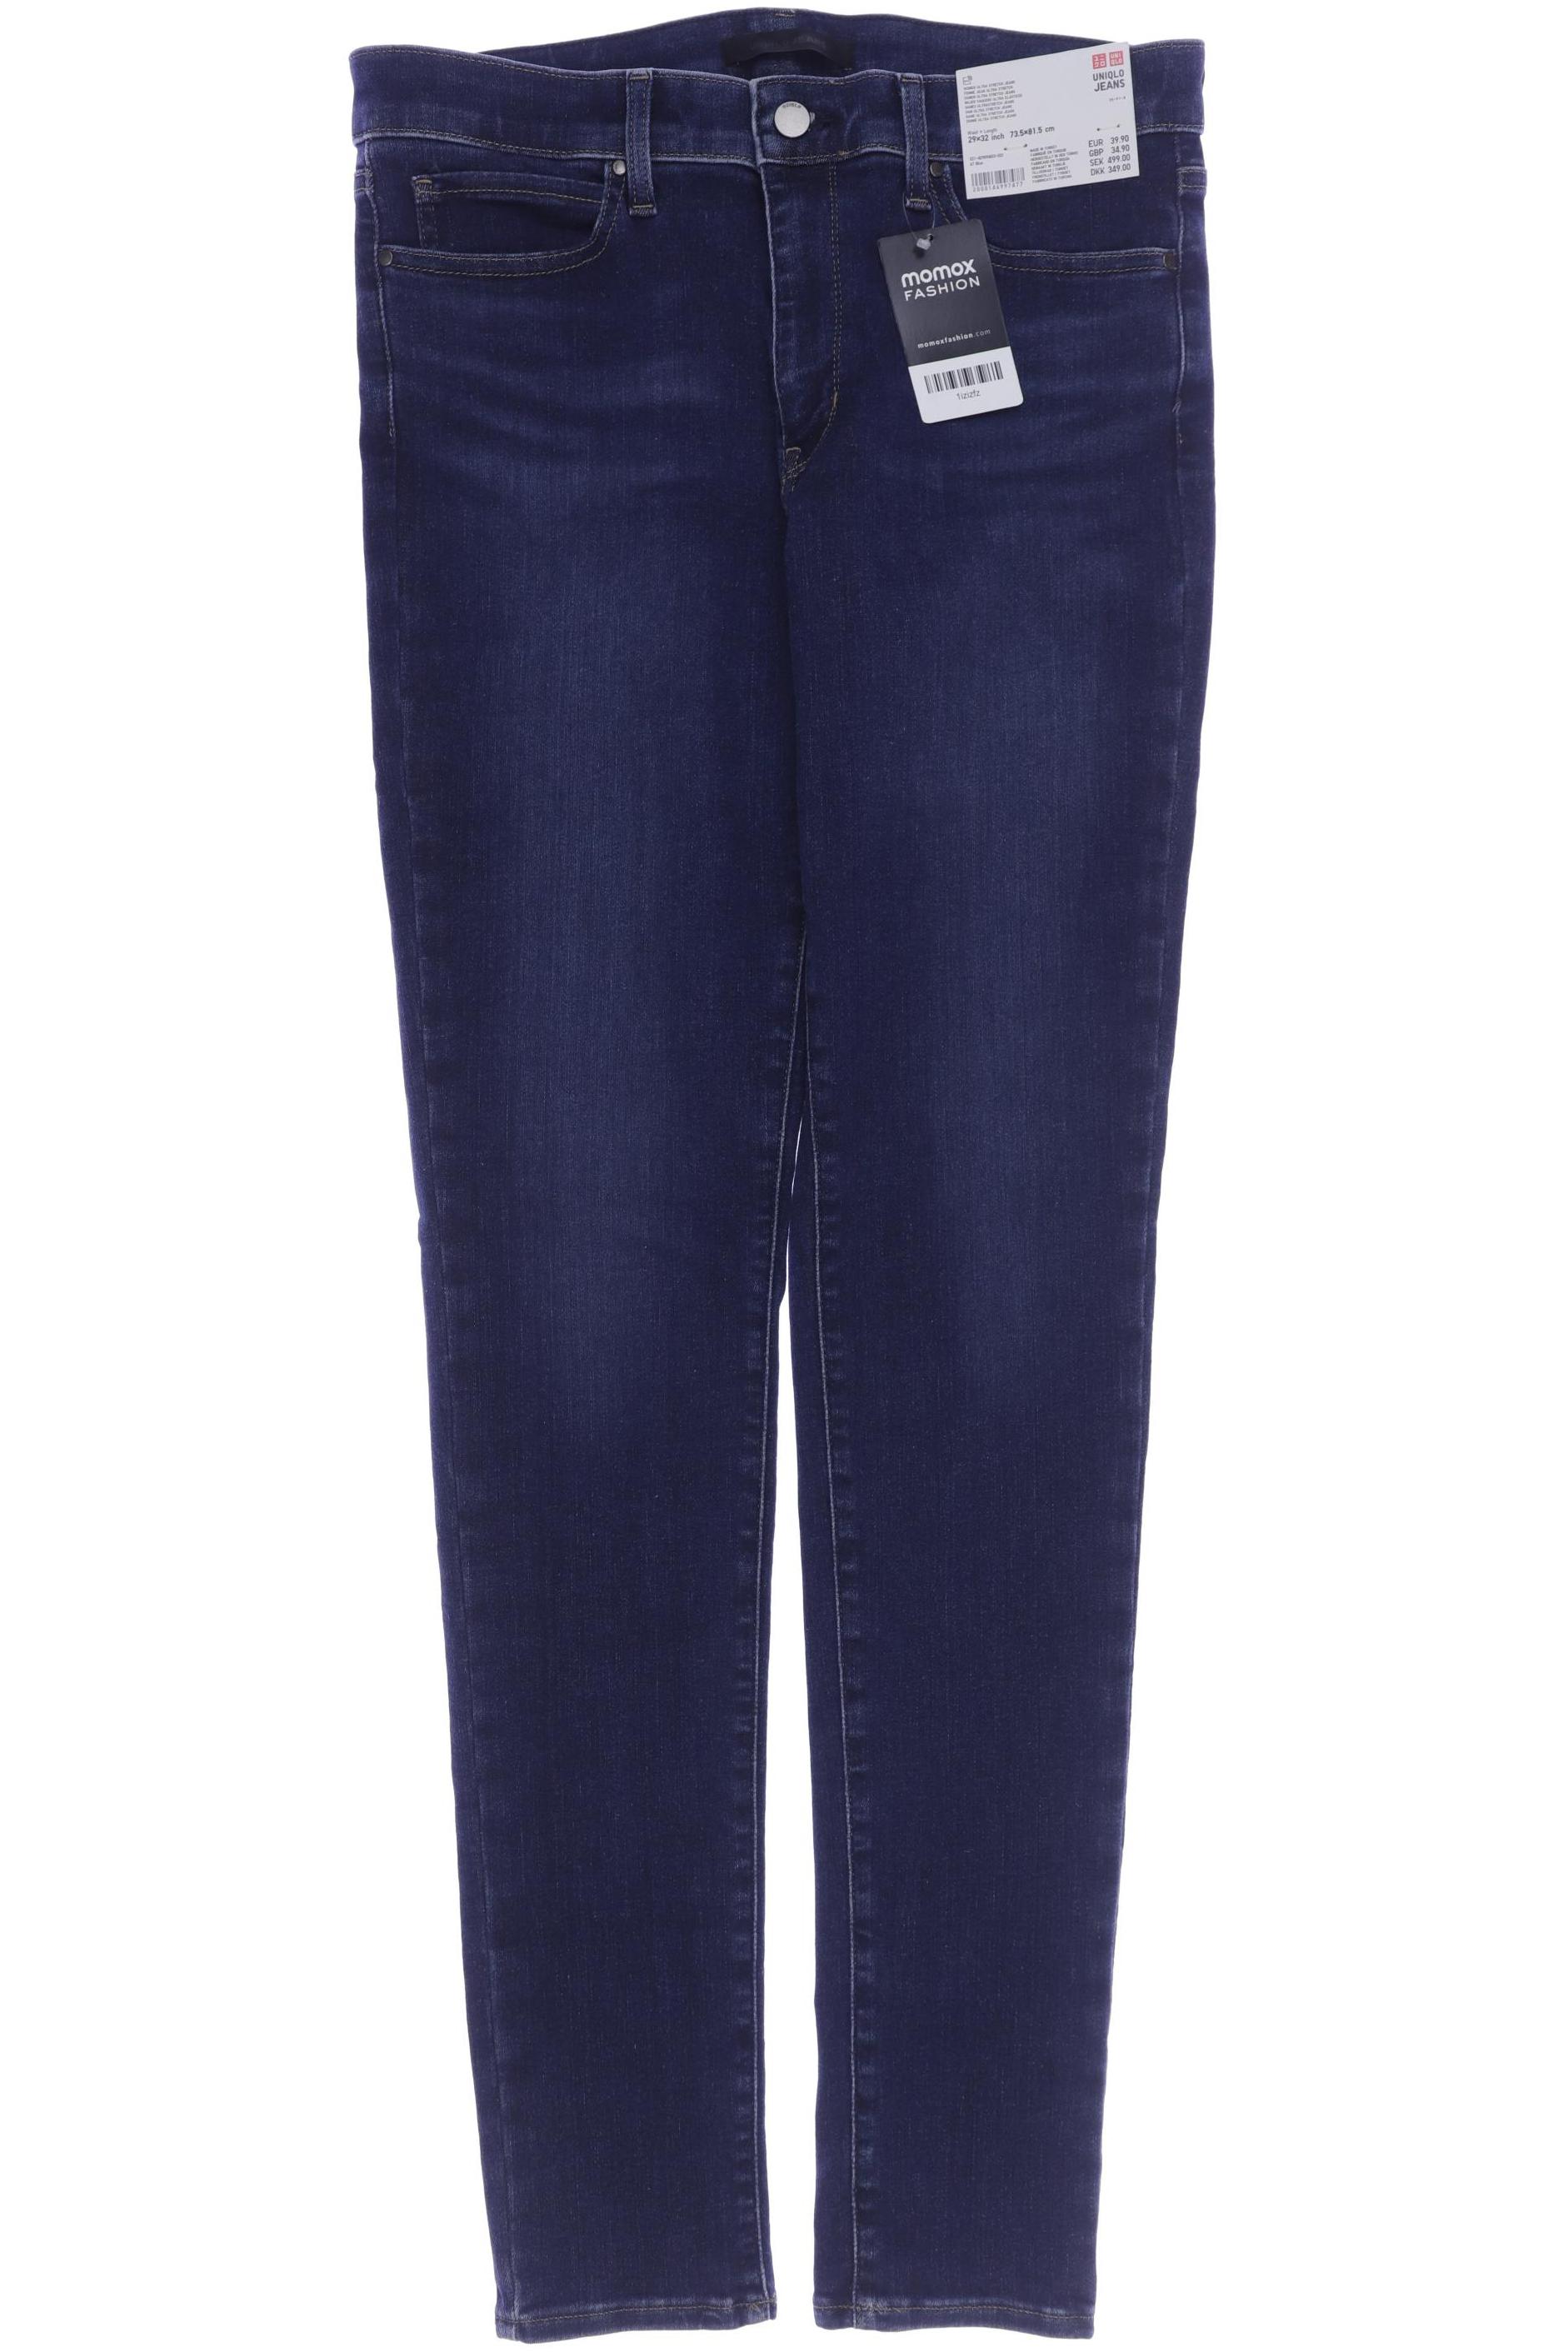 uniqlo Damen Jeans, blau, Gr. 40 von uniqlo